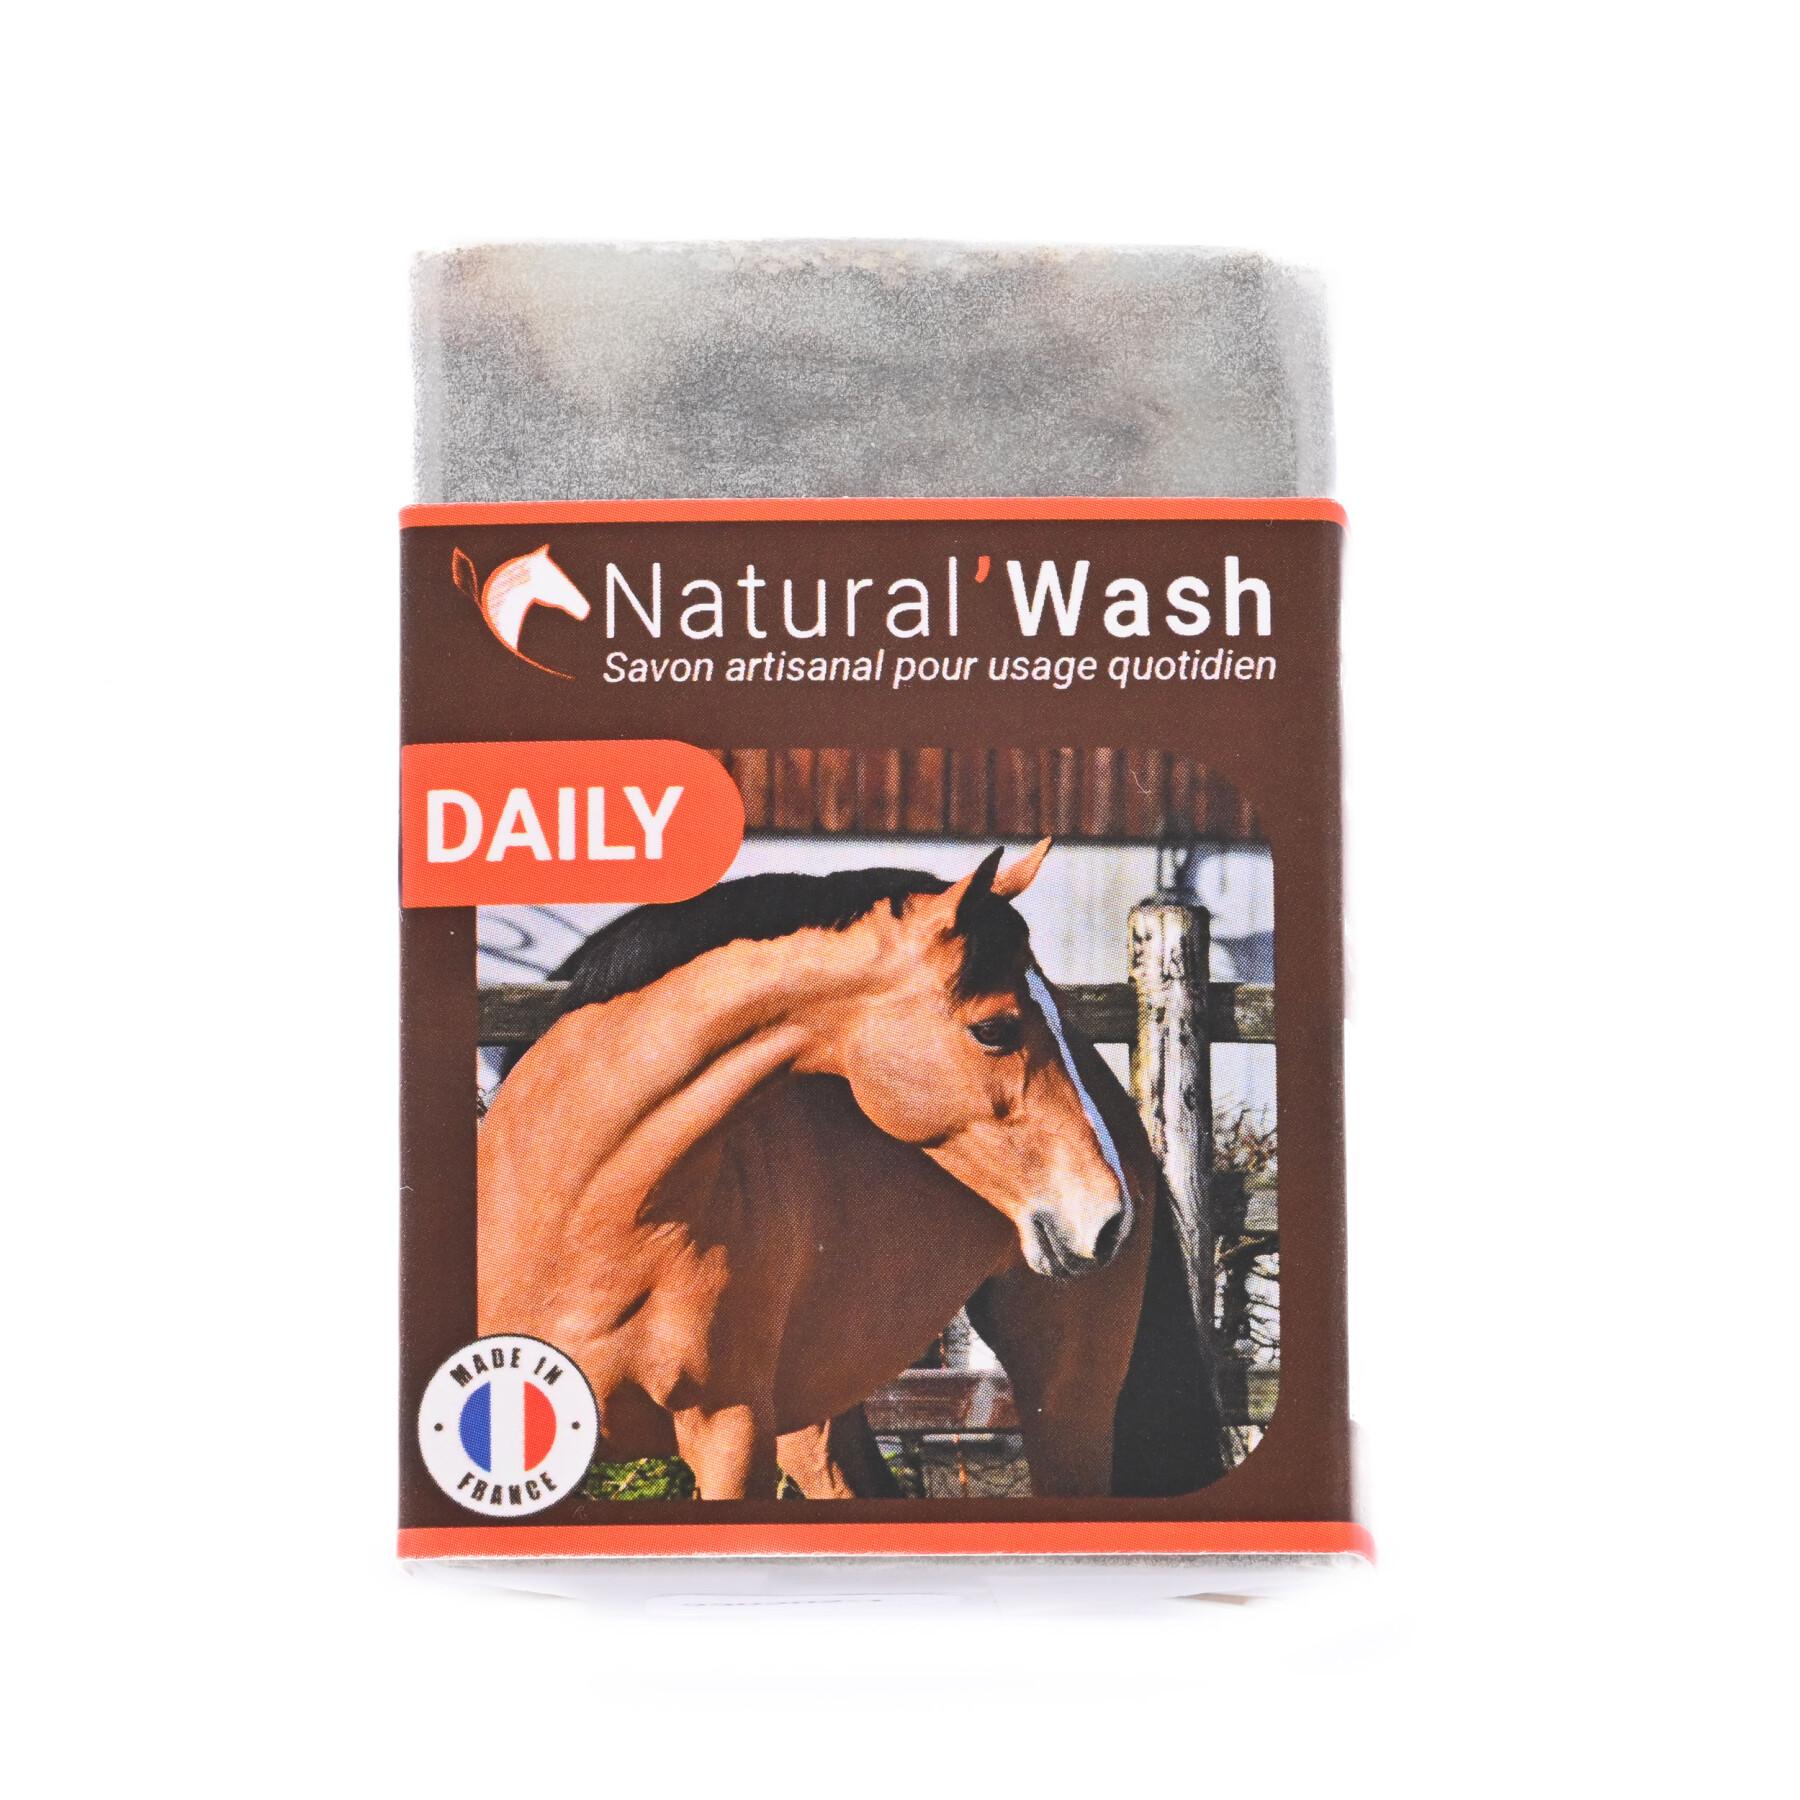 Natural'wash daily soap - 100 g Natural Innov